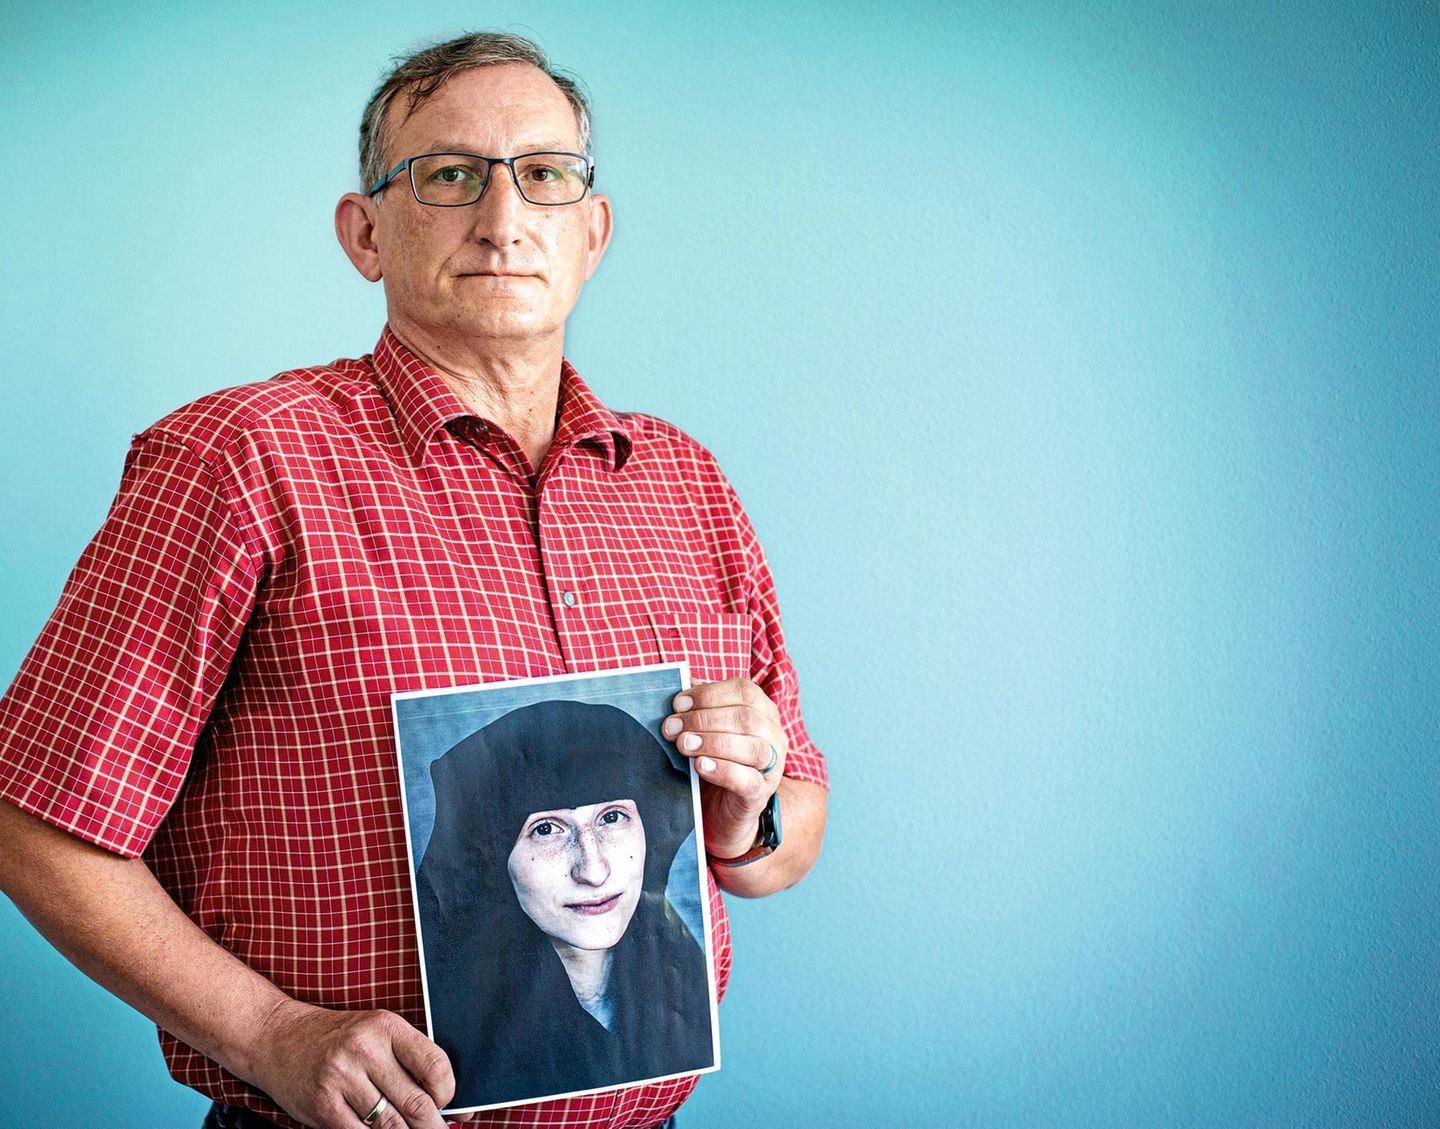 Tochter beim IS: Vater Maik Messing spricht über den Kampf um sie